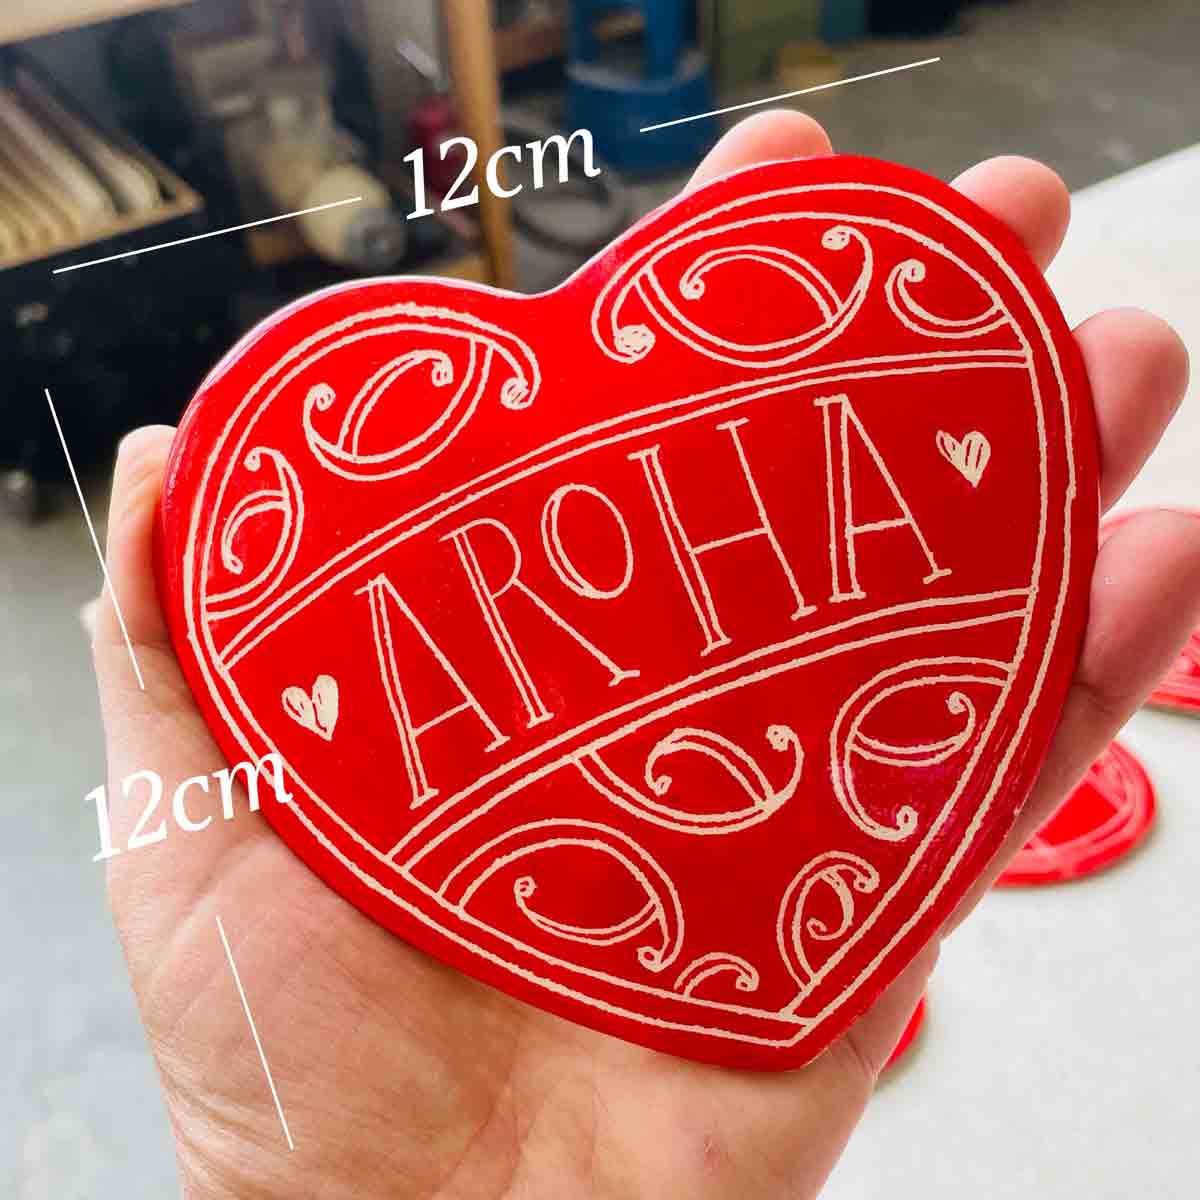 Red Aroha Ceramic Heart